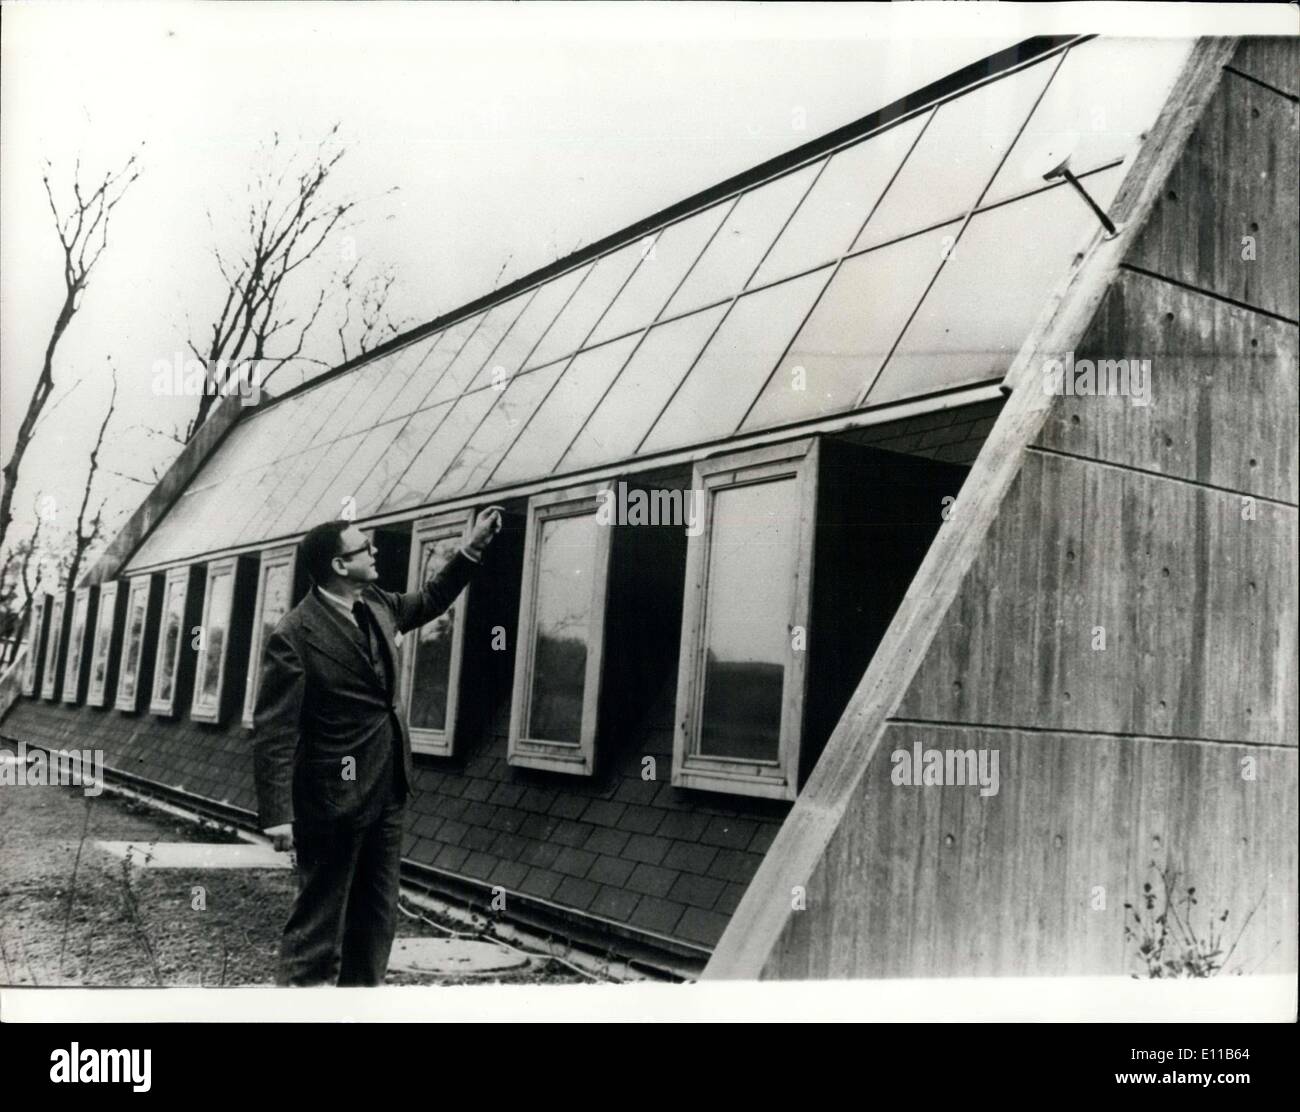 10. November 1976 - Solar-Haus: Dänische Boiler Works Association hat Deisgnen und ein Haus gebaut, was geglaubt wird, um einen Prototyp des Hauses der Zukunft sein. 80 % der Wärme im ganzen Haus stammt aus Solarenergie erzeugt durch die Strahlen der Sonne, die von Sonnenkollektoren 7 Quadrat Metern empfangen werden. Es gibt 16 Solarkollektoren auf der Südseite des Hauses, sie sind alle verschieden, konstruiert und entwickelt. Die Heizung. Boiler Works Association Absichten, 280 Sqaure m Haus als Gauhaus Quadratmetern als Bezirksamt in Aalborg, Jütland zu verwenden Stockfoto